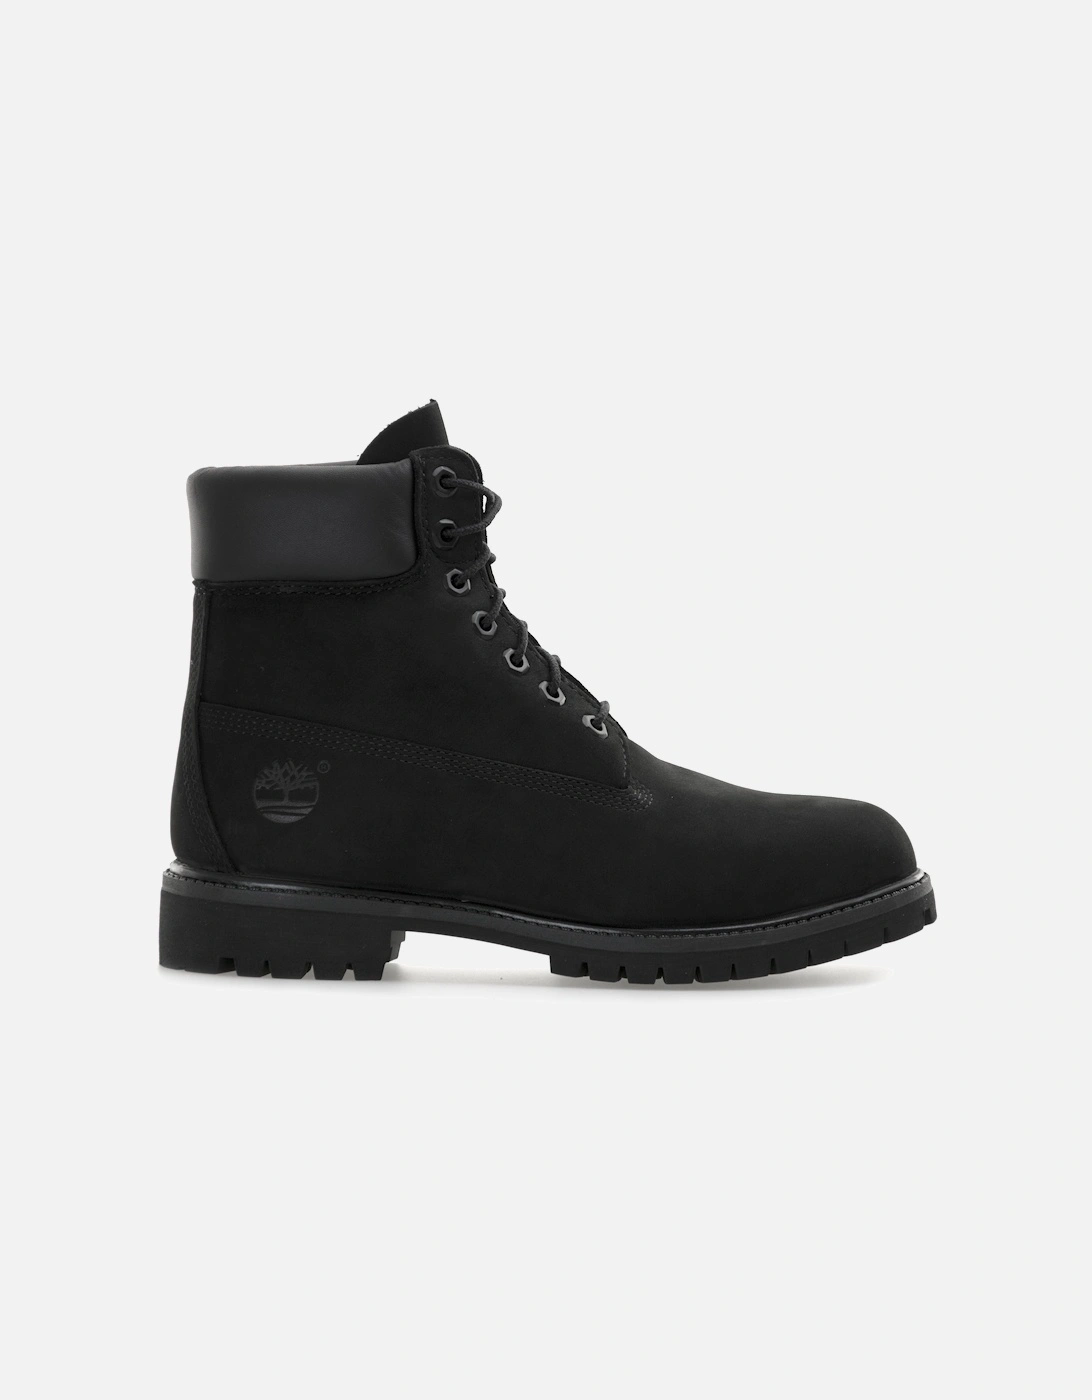 Mens 6 Inch Premium Classic Boots (Black)